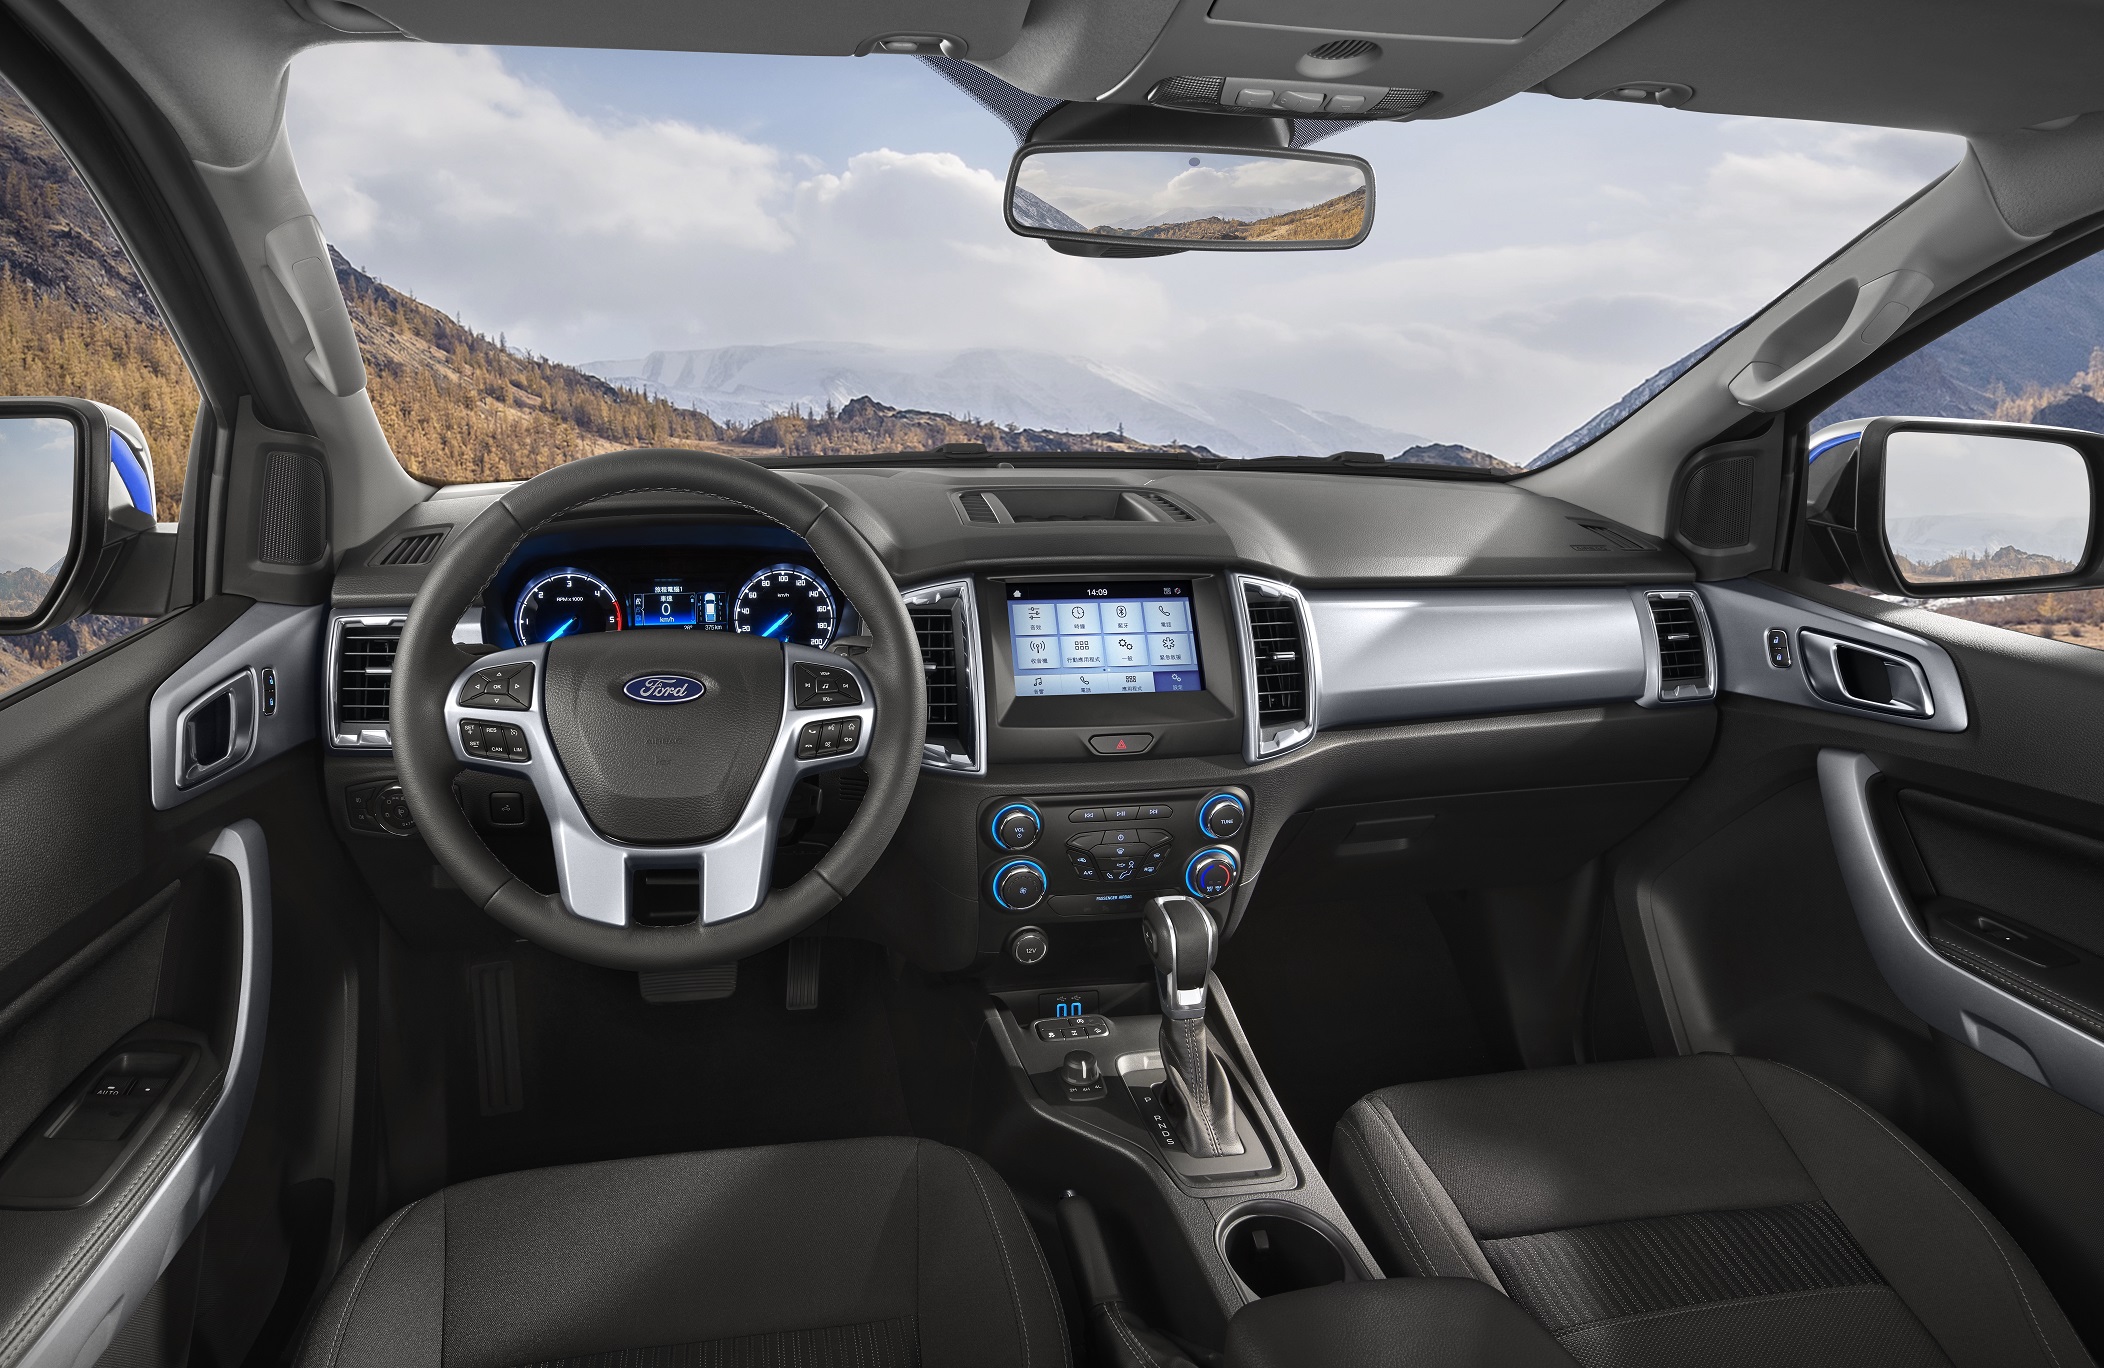 21 年式 Ford Ranger職人型／全能型全面搭載中文化儀錶資訊介面，職人型再升級原廠 8 吋全彩觸控螢幕，內建 SYNC 娛樂通訊整合系統。